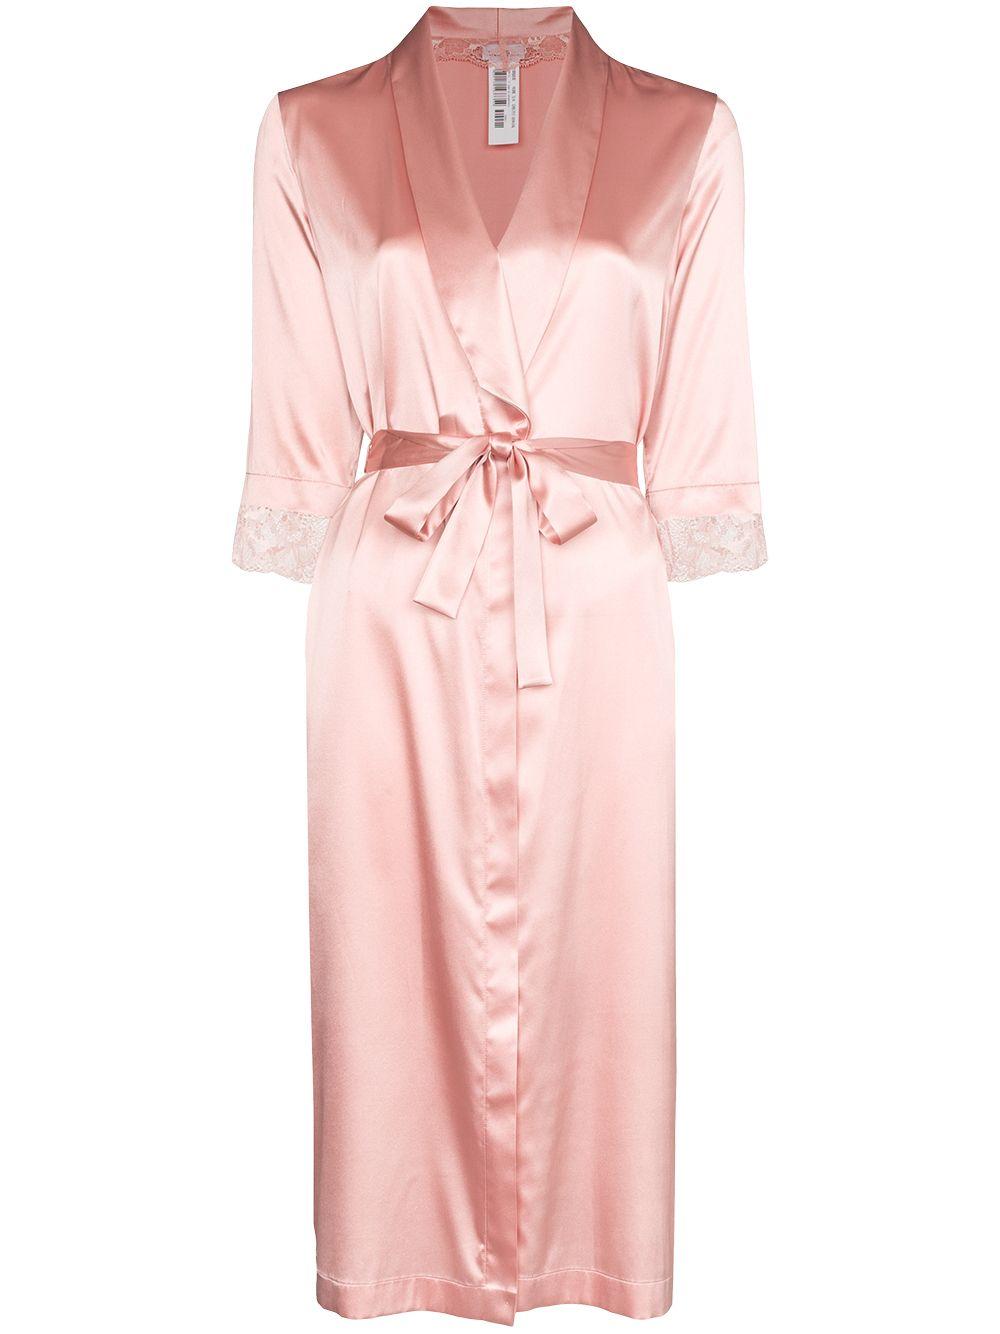 La Perla Adele Silk Robe in Pink - Lyst